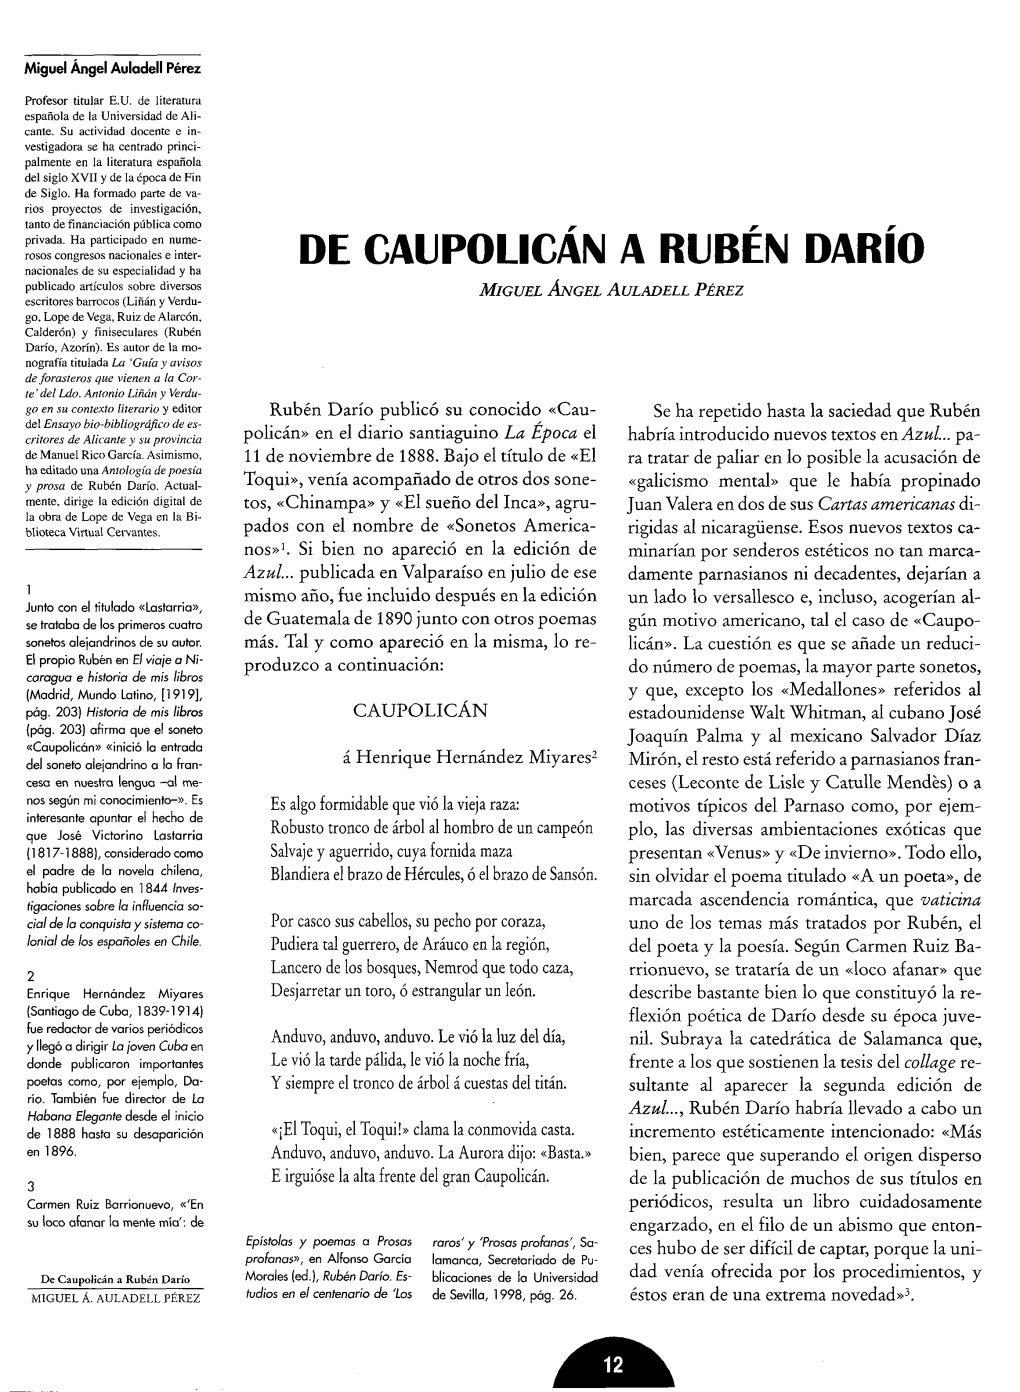 De Caupolicán a Rubén Darío